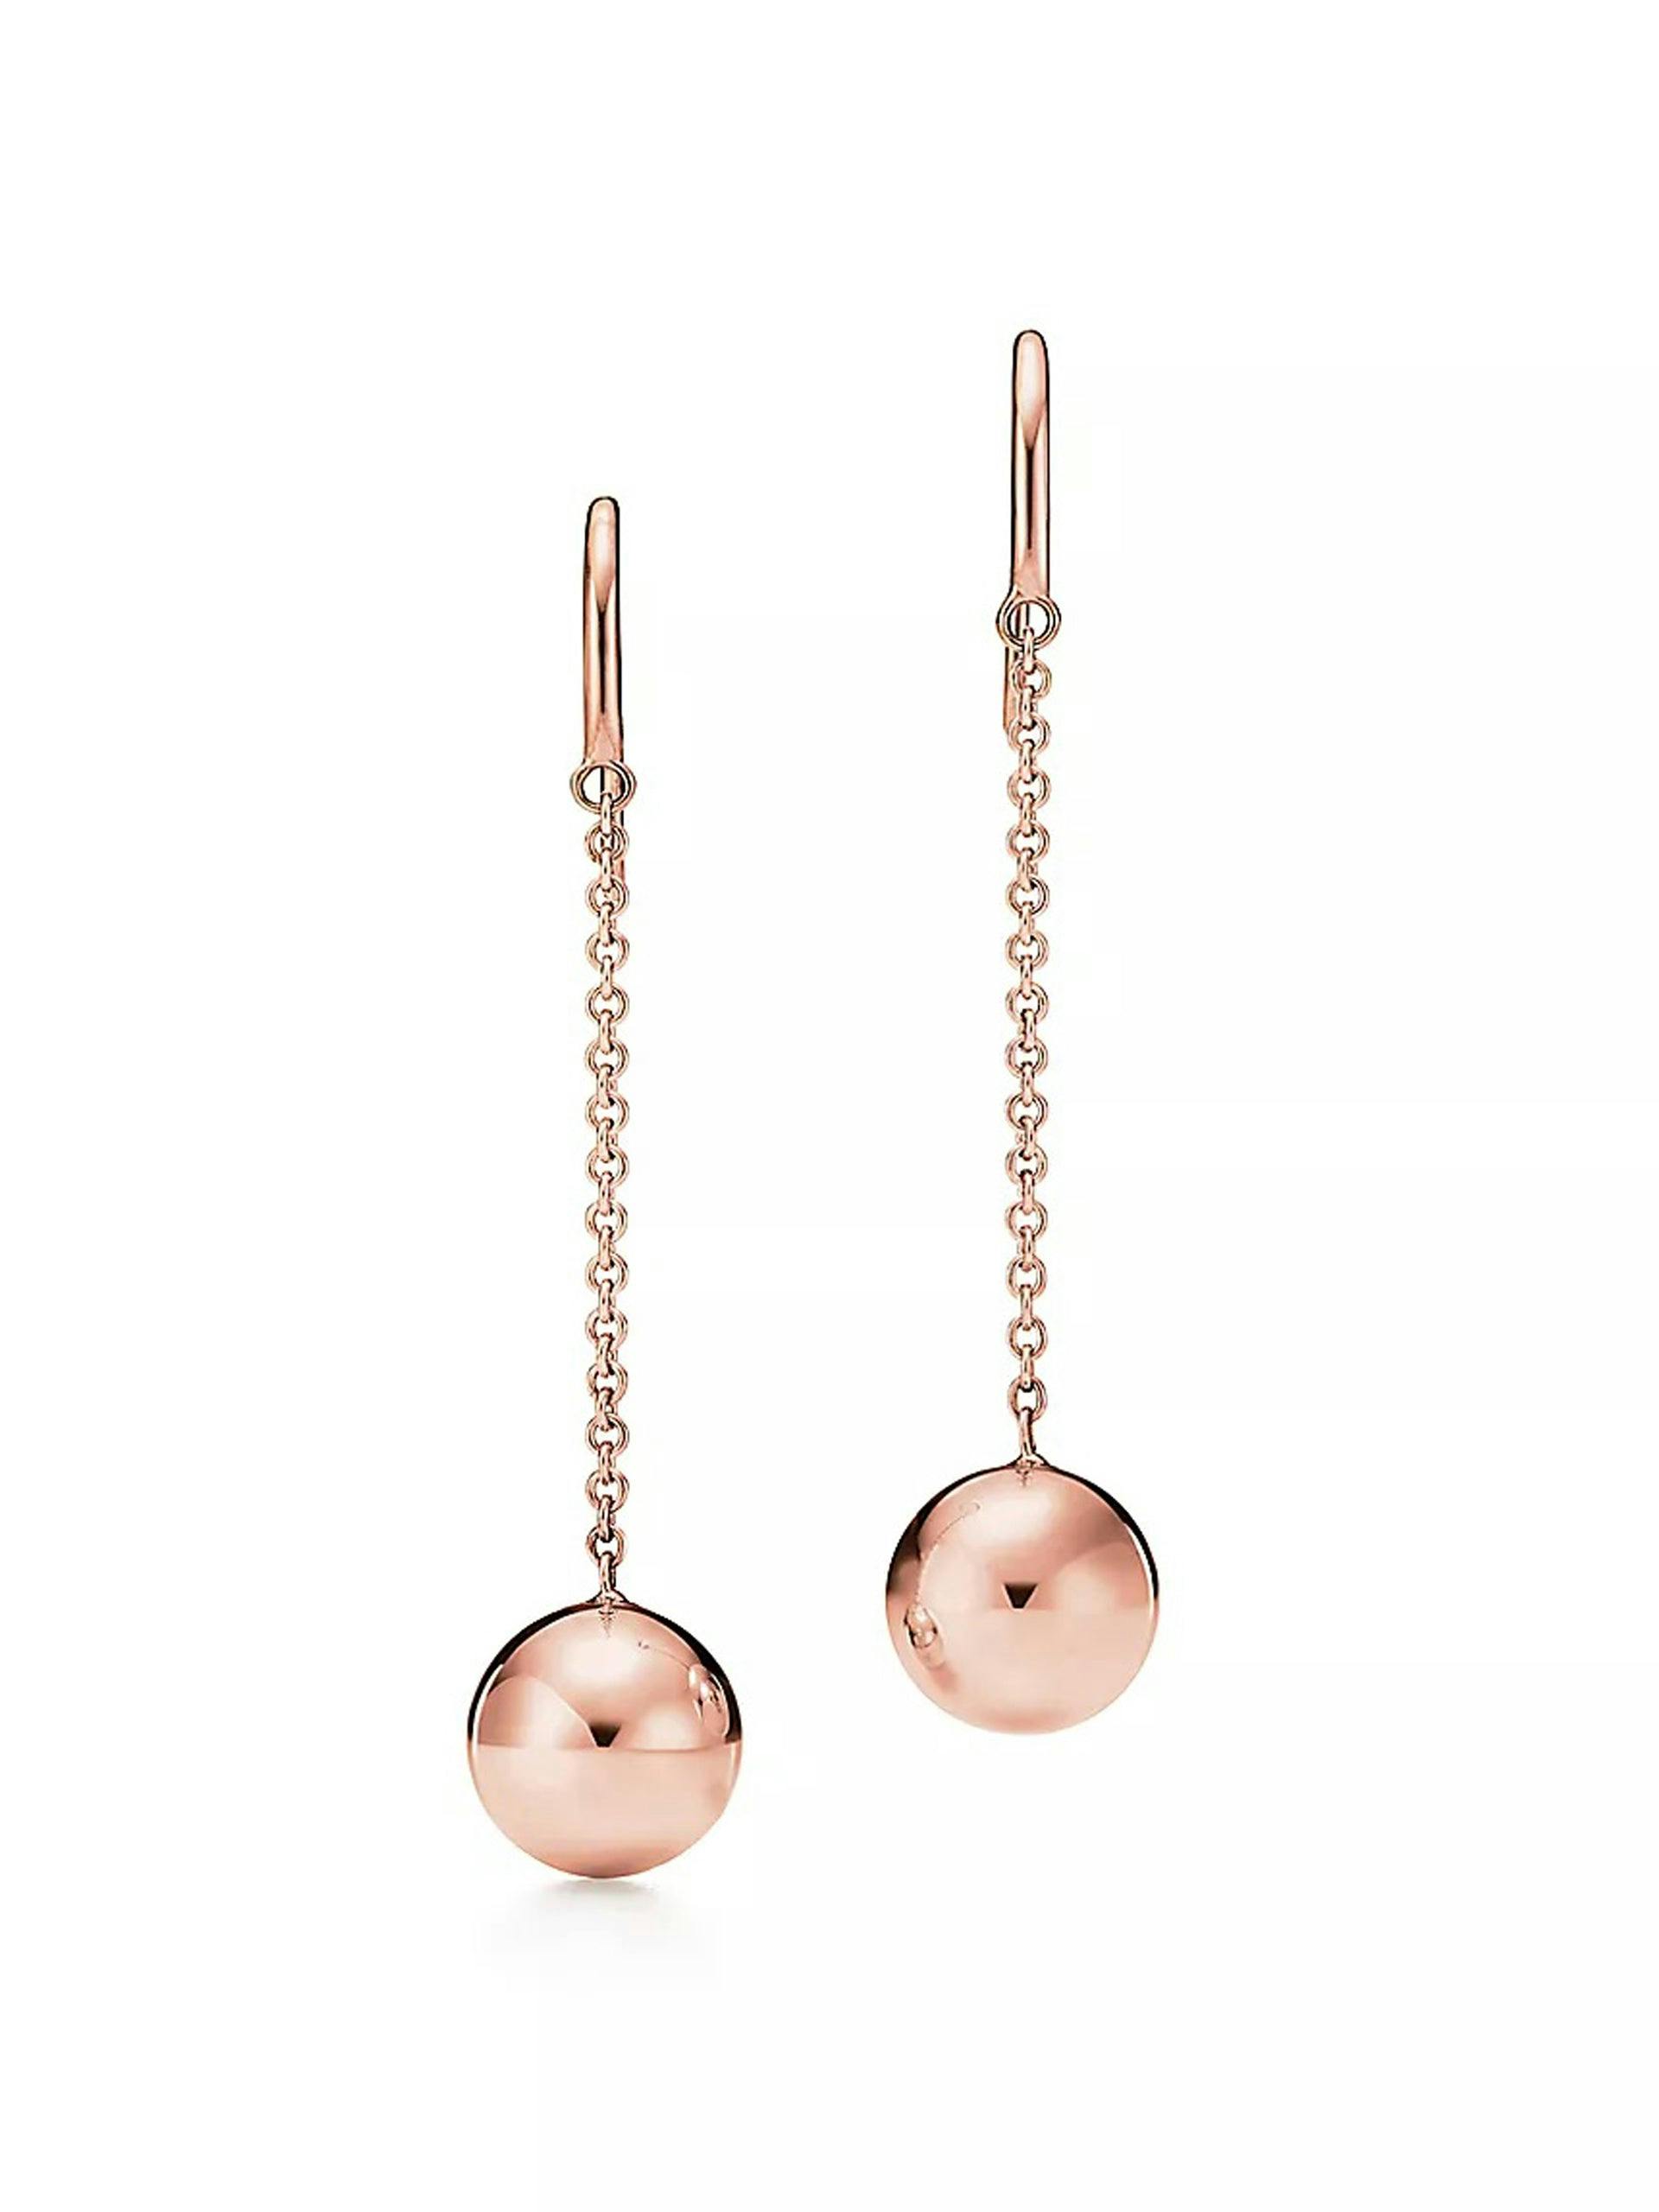 Rose gold ball hook earrings